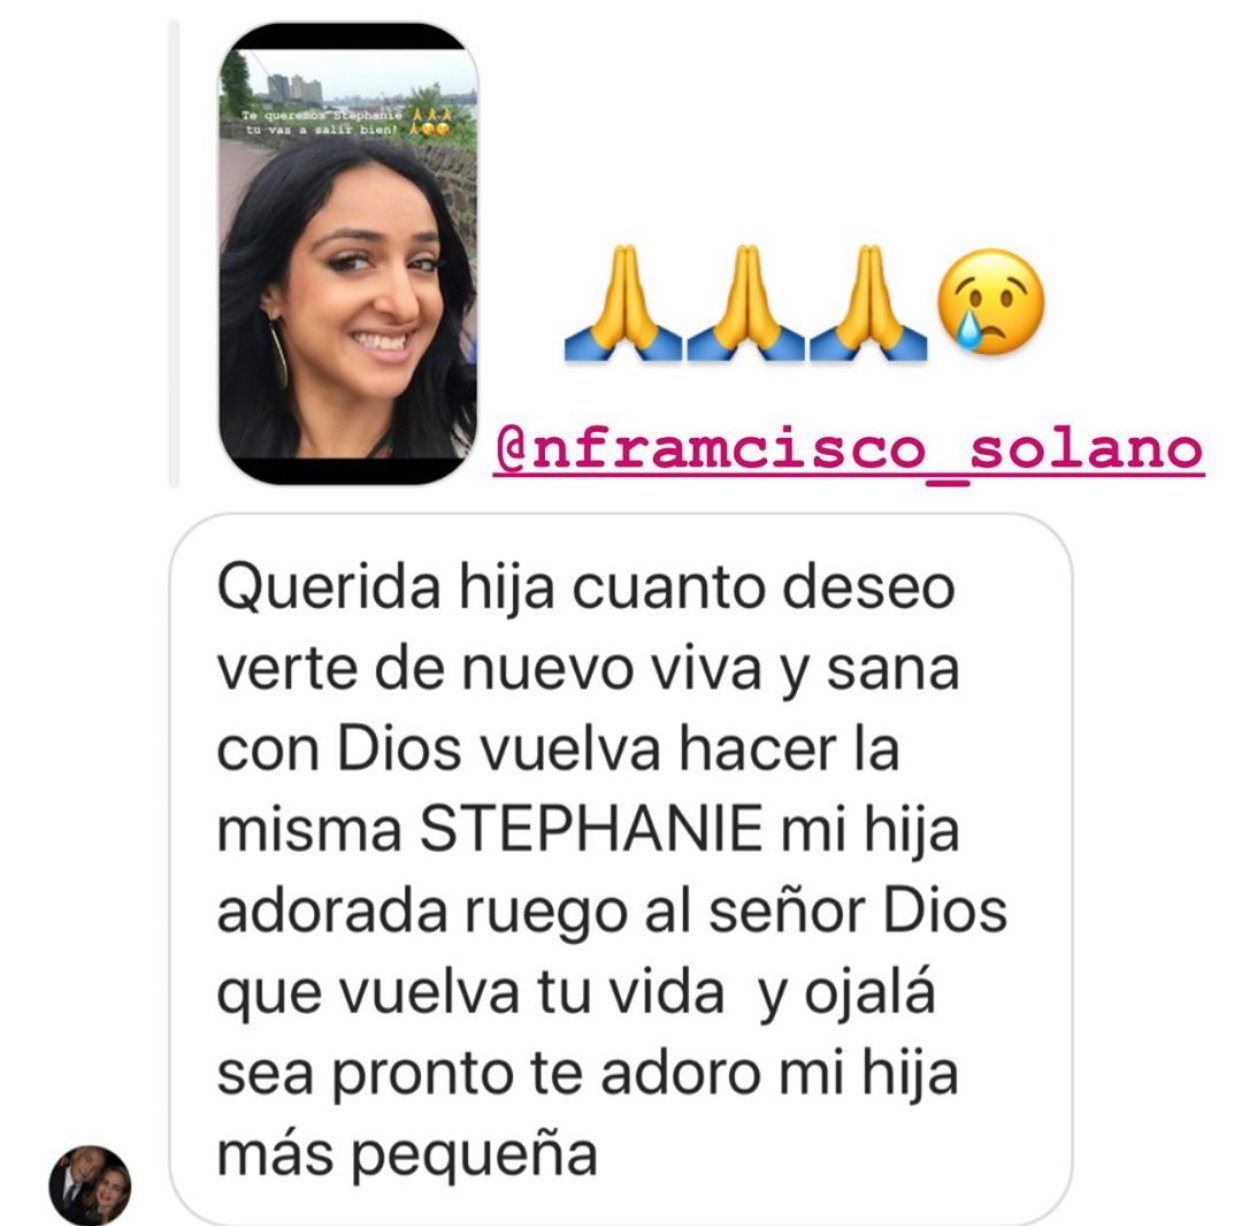 Mensaje escrito por Francisco Solano, padre de Gelena Solano, rogando por la recuperación de su hija. | Foto: Historias de Instagram/gelenasolanotv